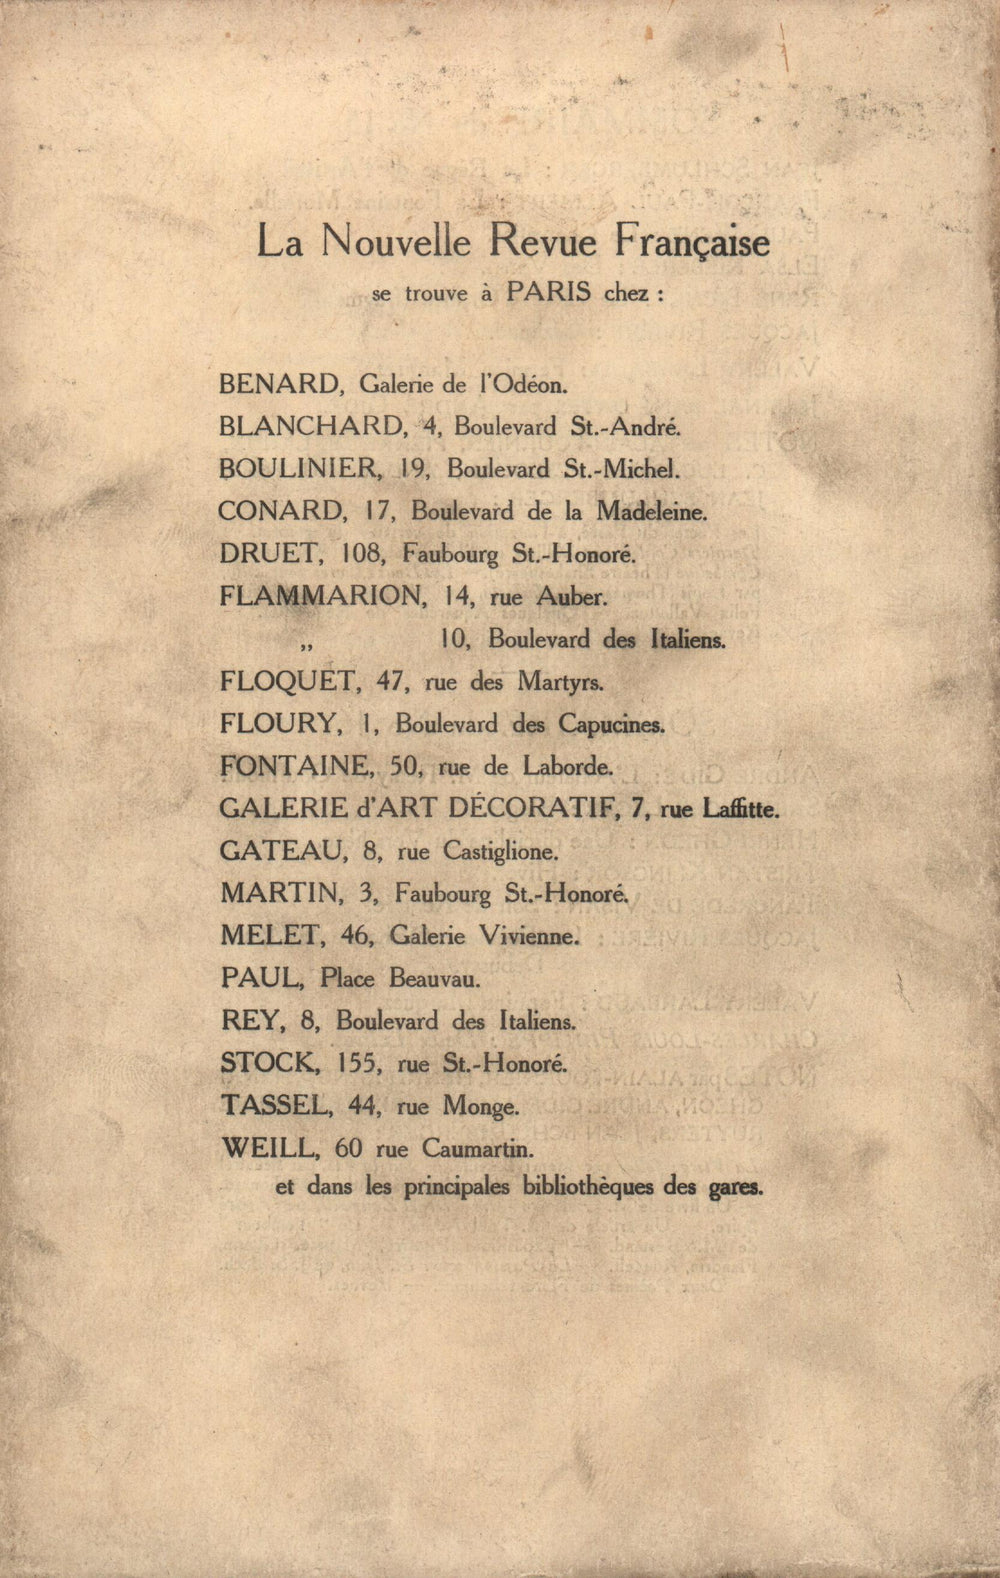 La Nouvelle Revue Française N' 17 (Mai 1910)